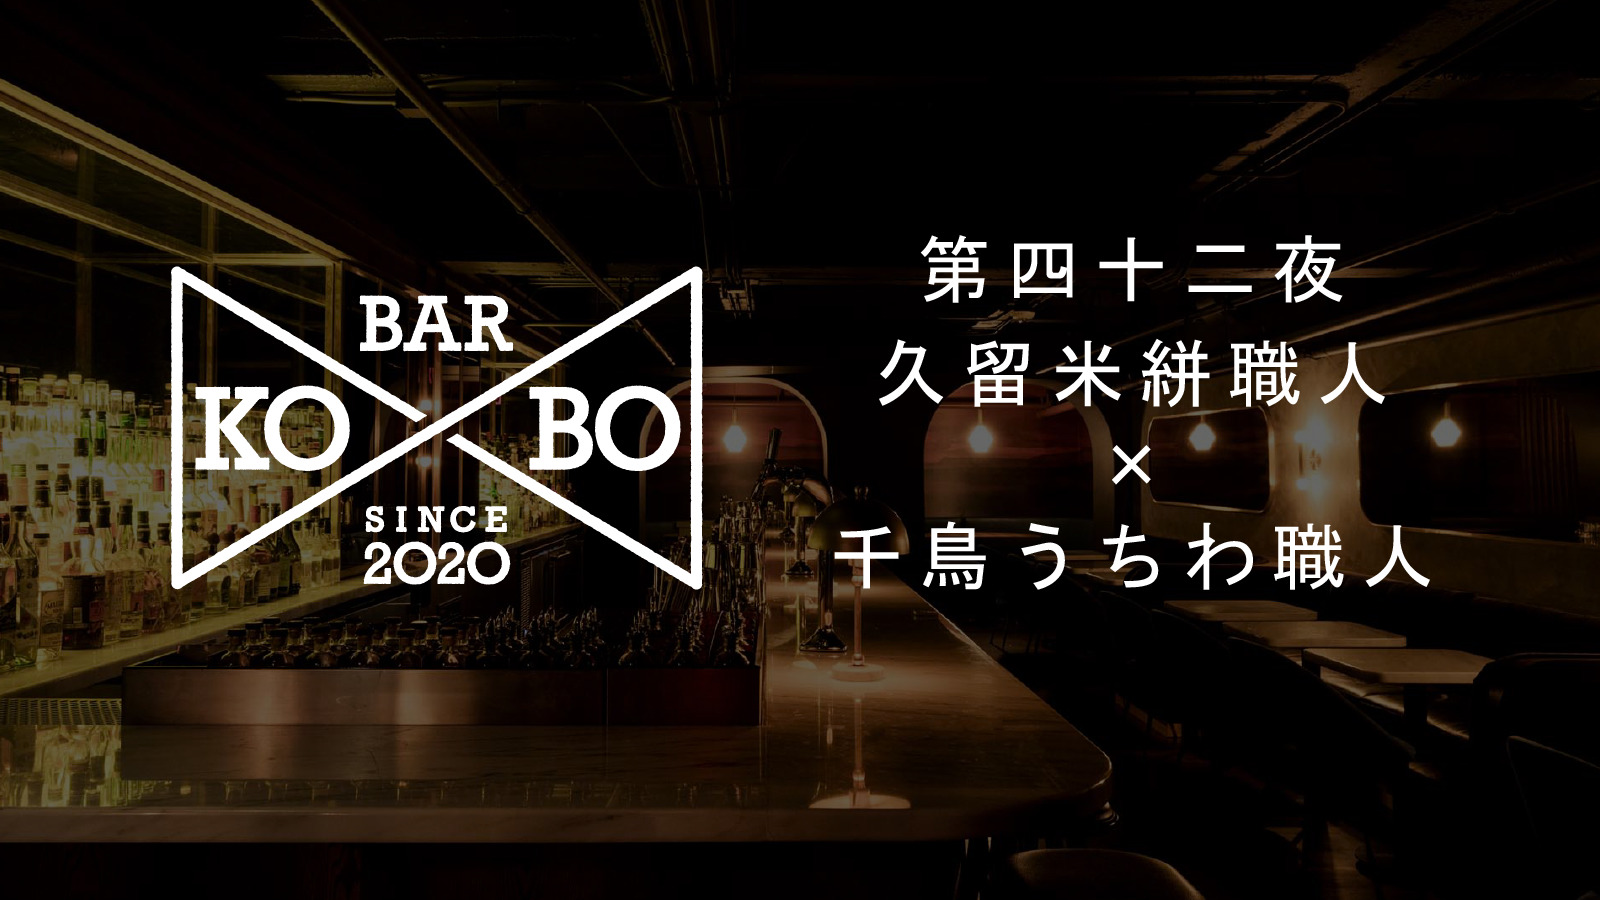 【Bar KO-BO 第四十二夜】久留米絣職人×千鳥うちわ職人